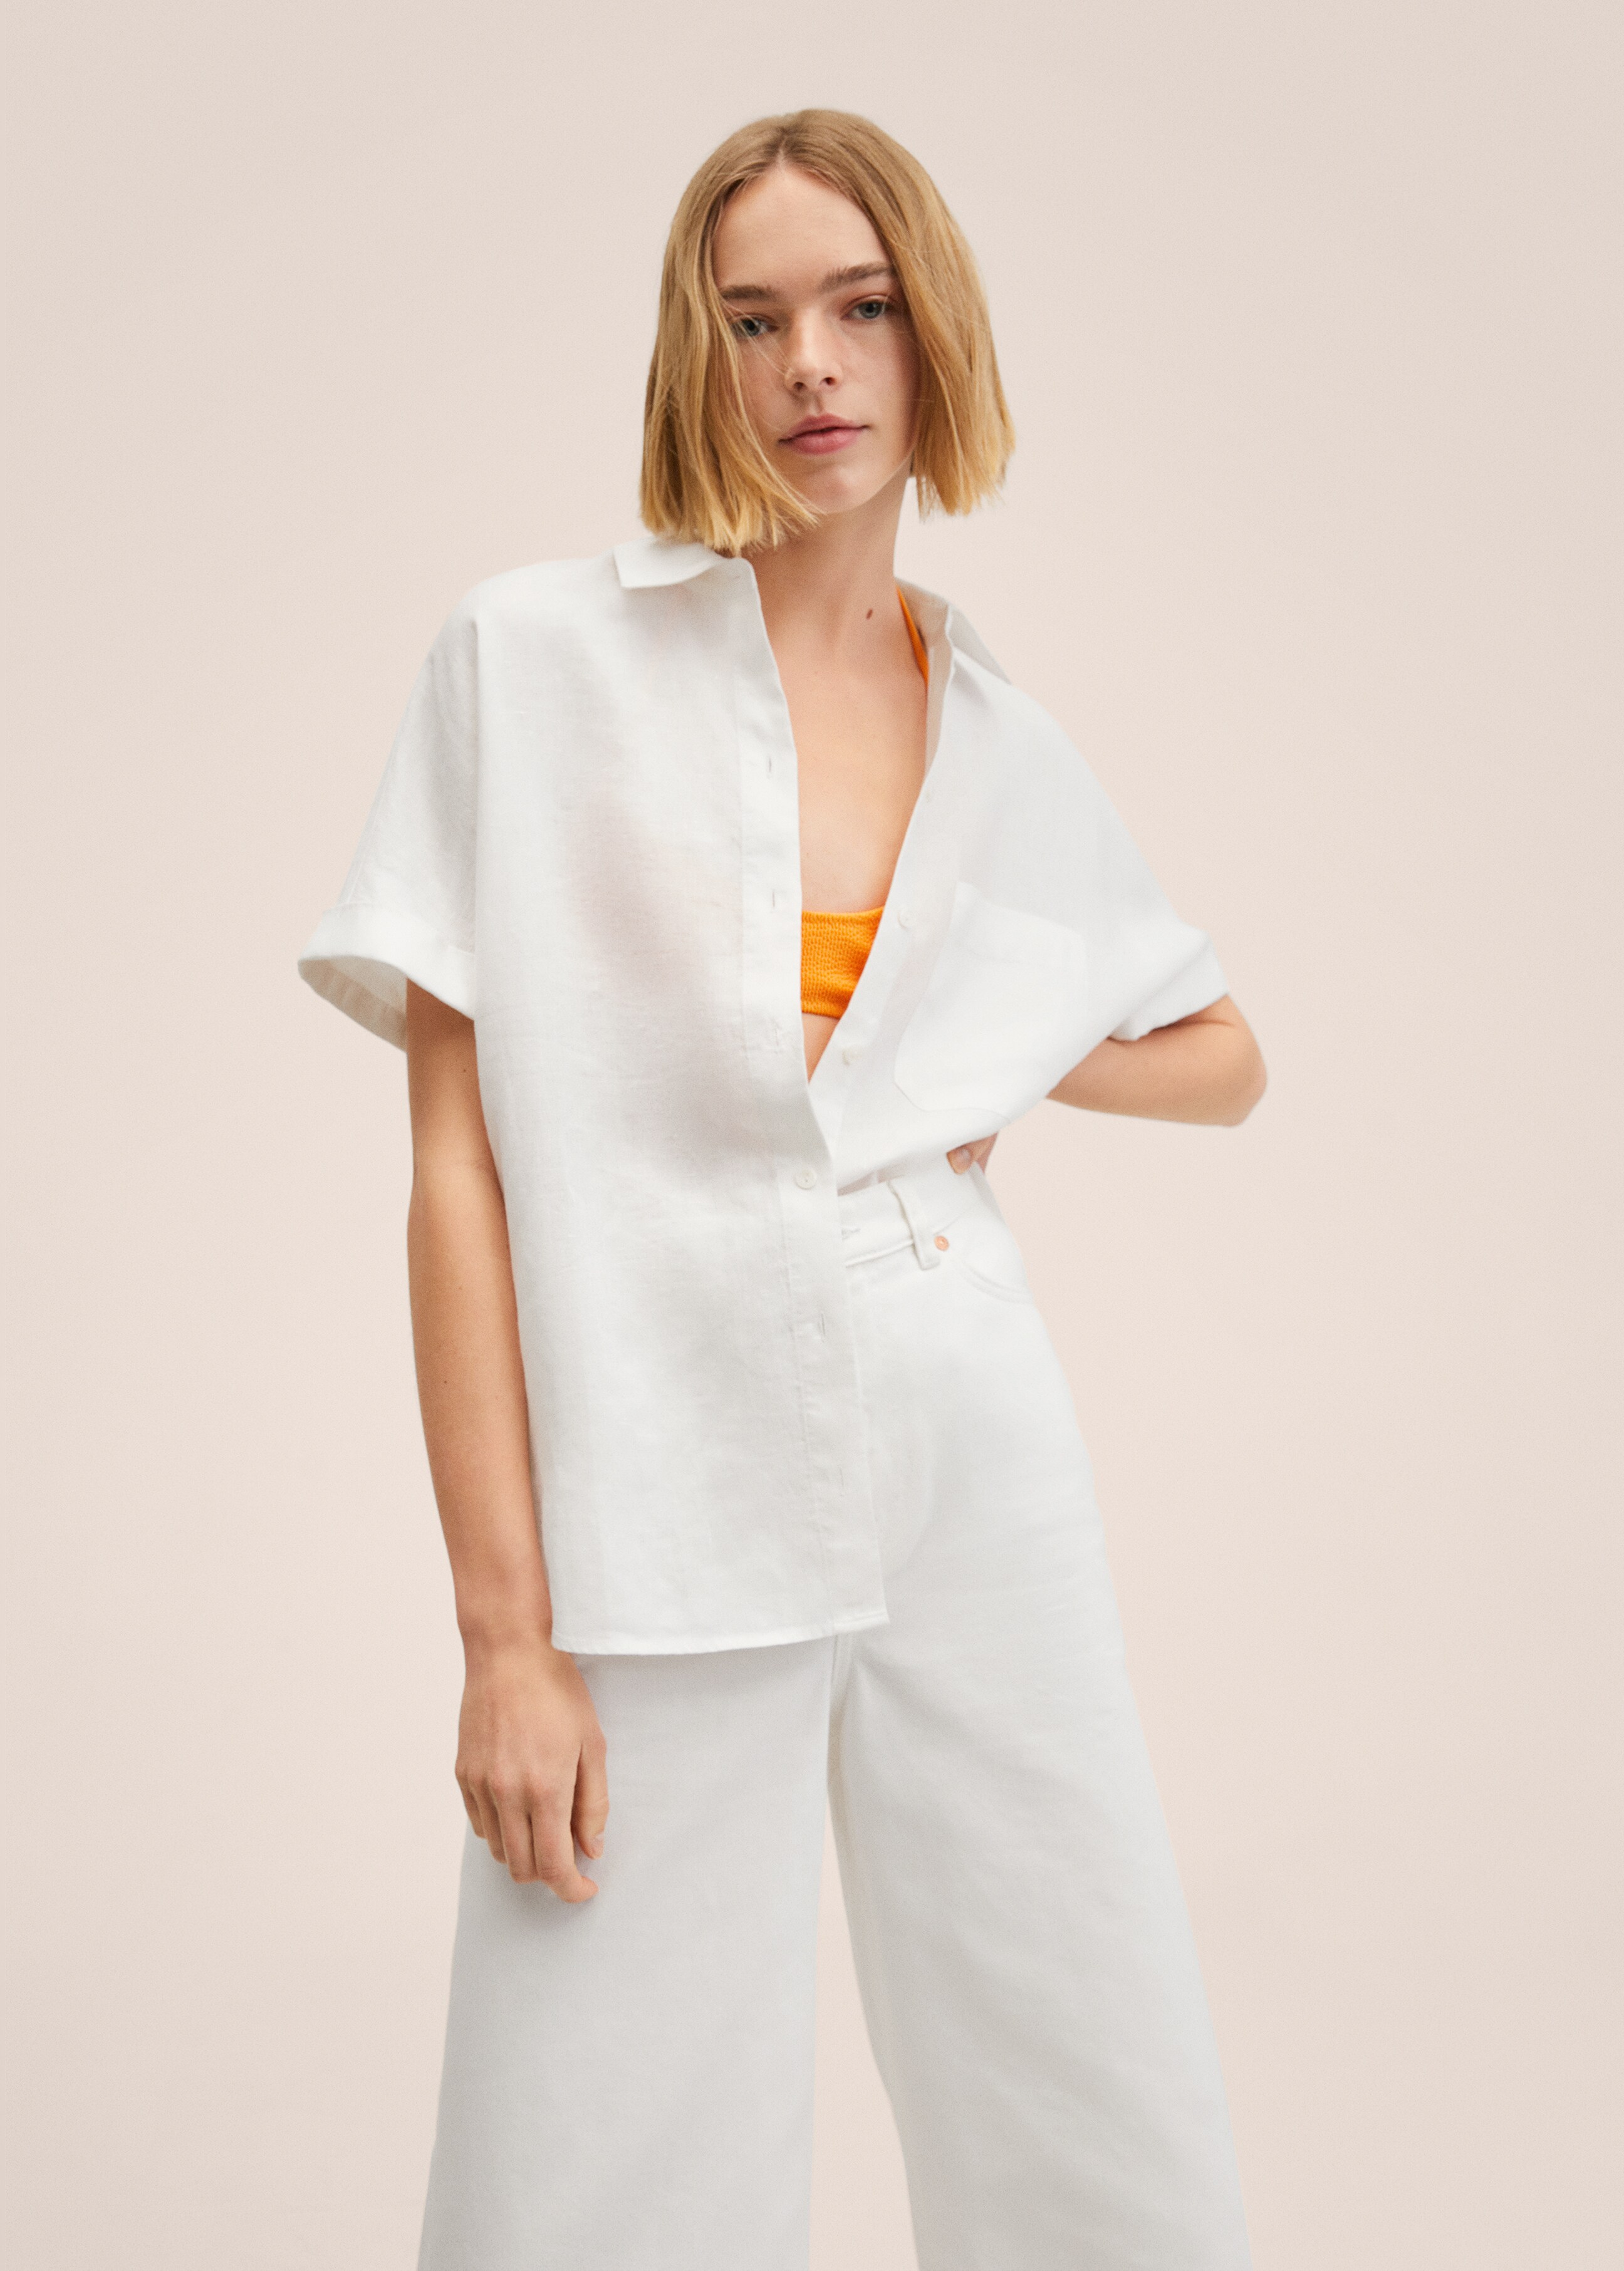 Linen 100% shirt - Medium plane